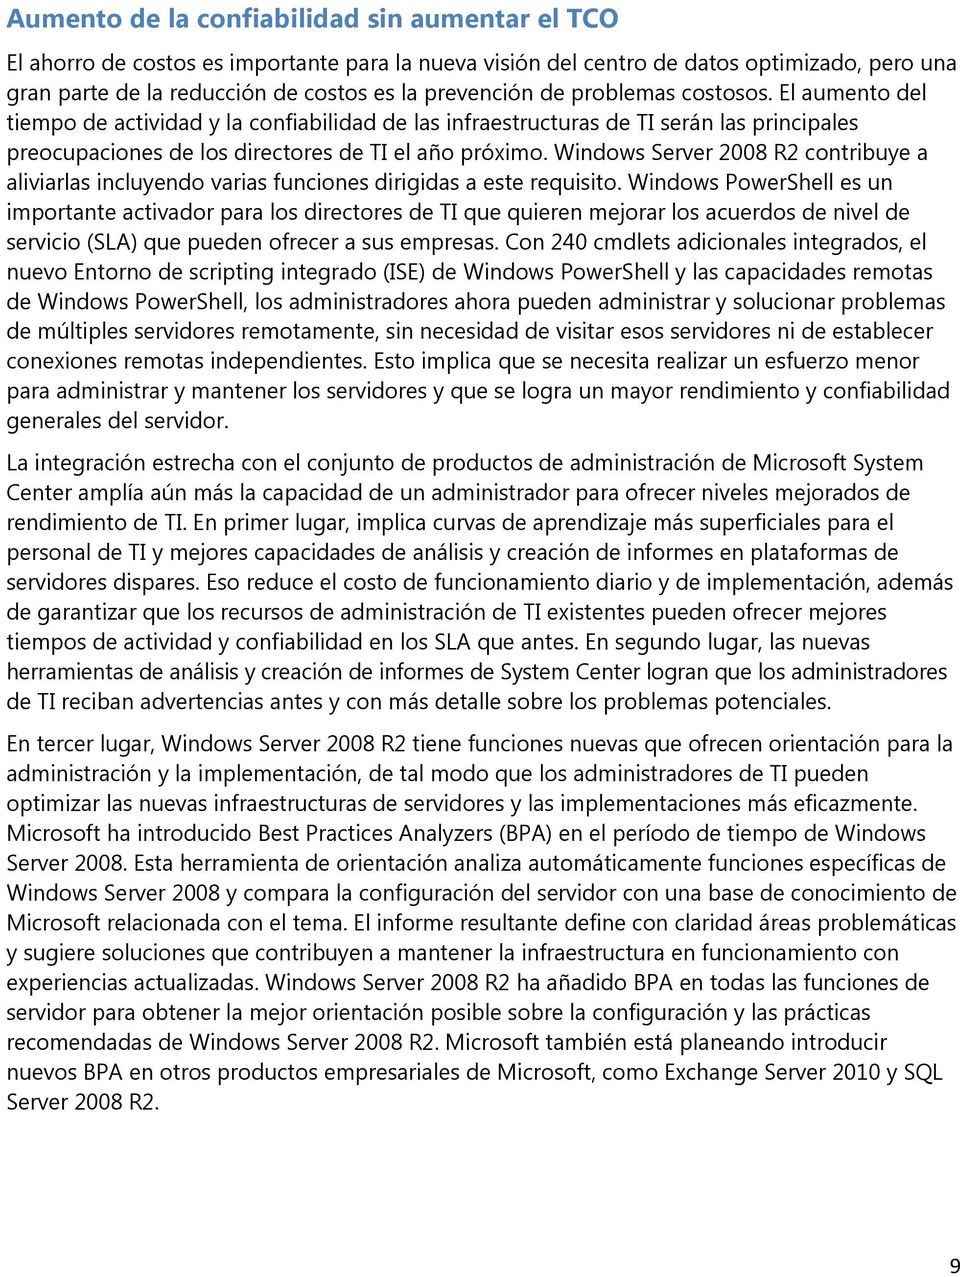 Windows Server 2008 R2 contribuye a aliviarlas incluyendo varias funciones dirigidas a este requisito.